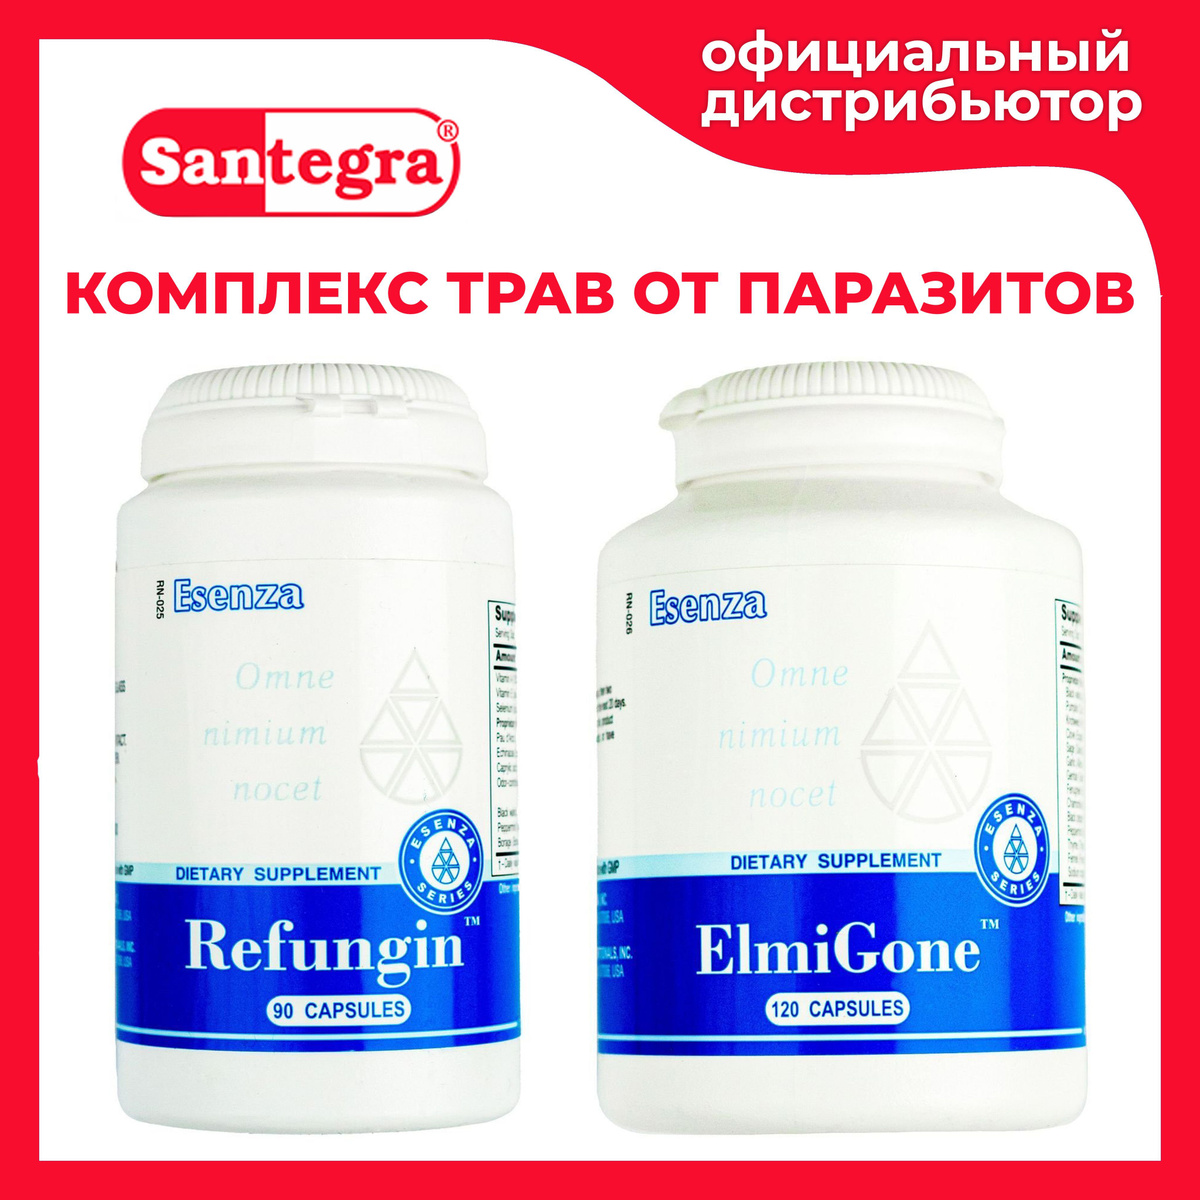 ElmiGone™ и Refungin™ - натуральные растительные препараты от паразитов, гельминтов и грибков.